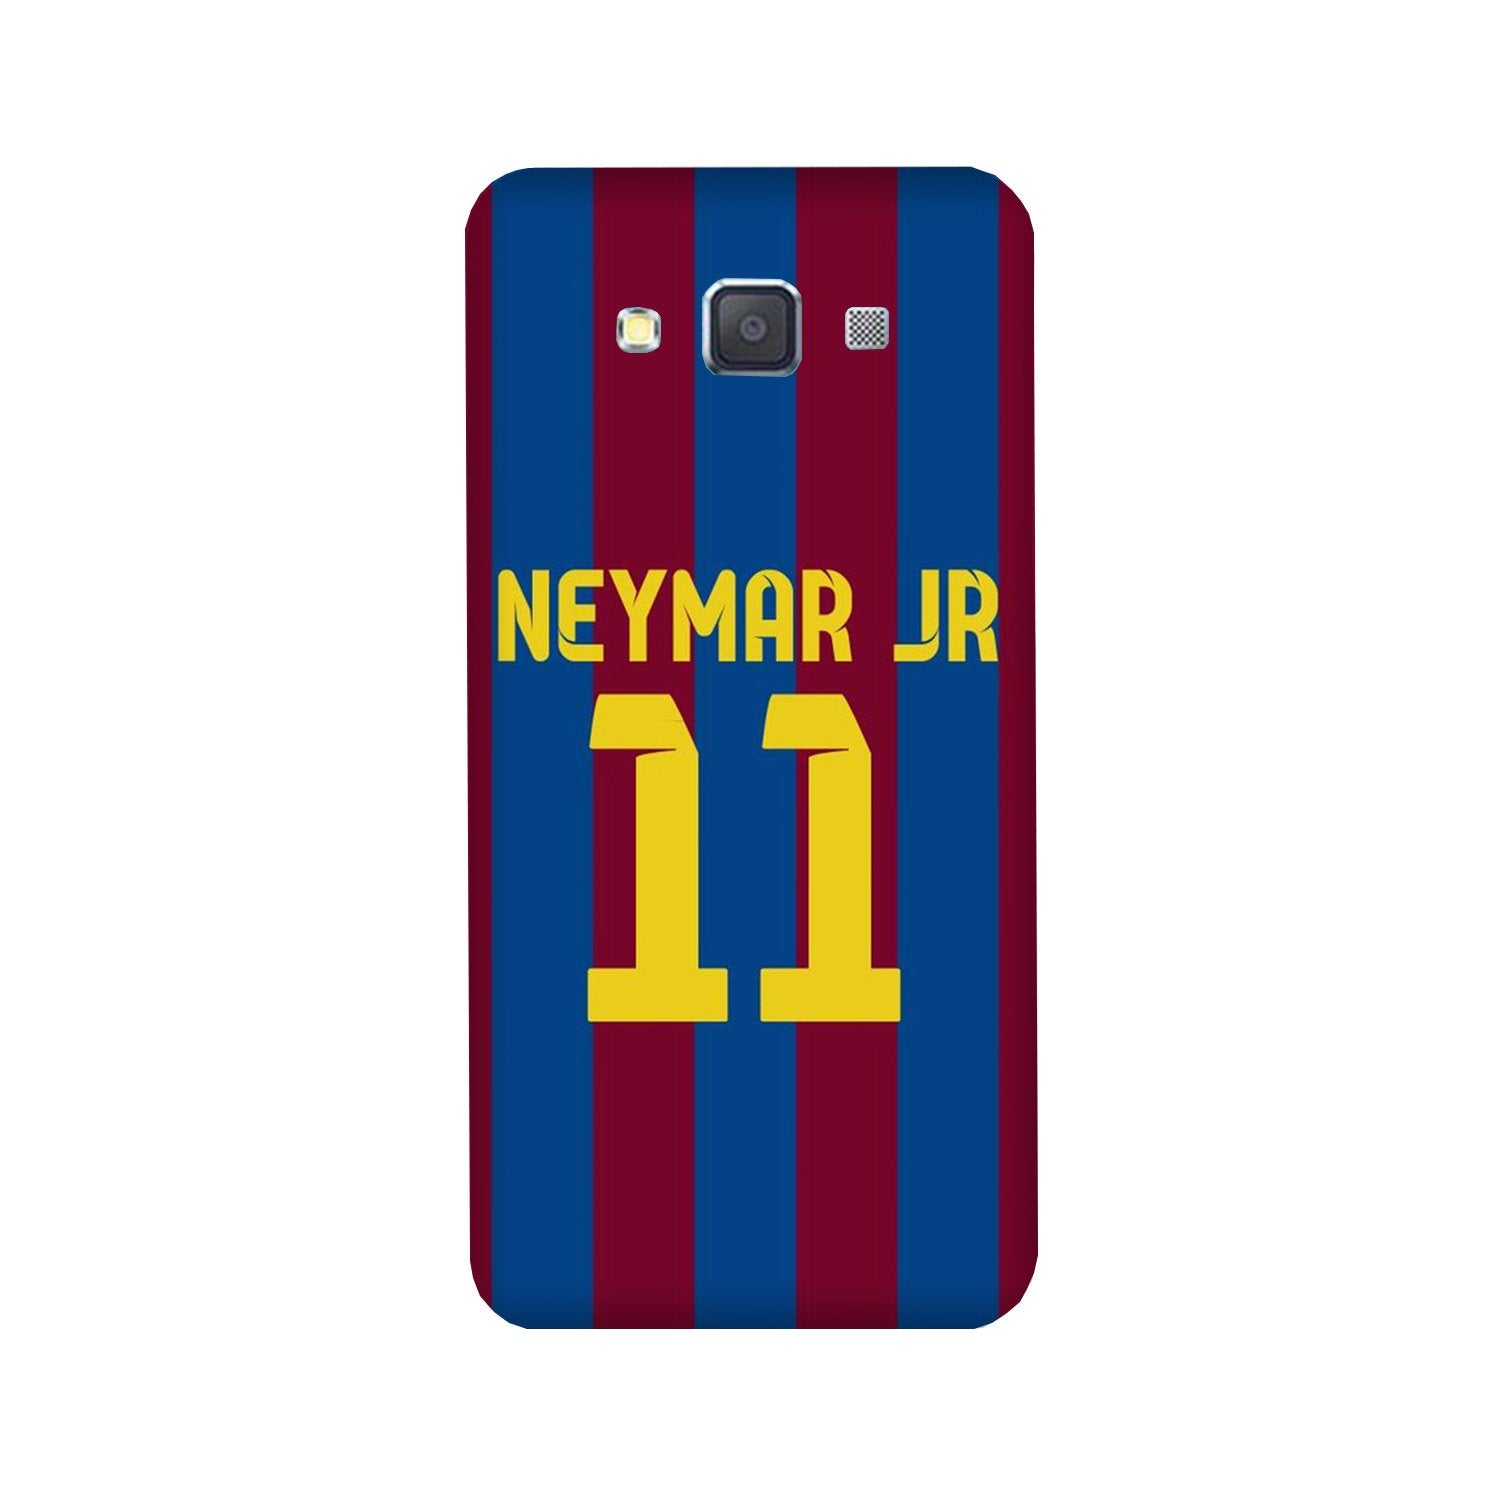 Neymar Jr Case for Galaxy A3 (2015)(Design - 162)